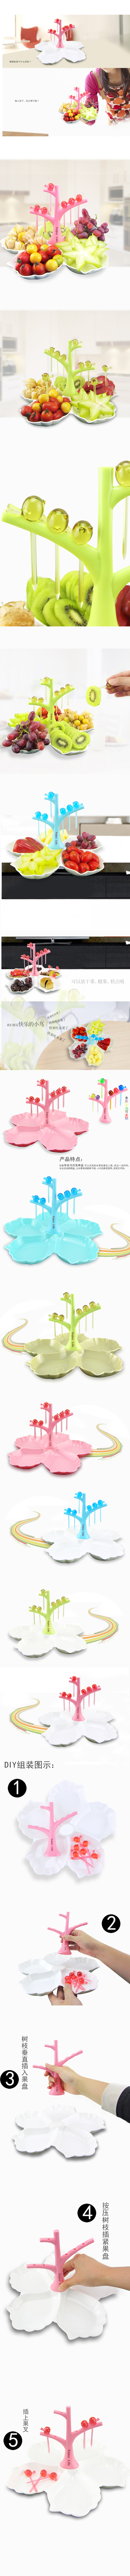 創意禮品果盤可拆洗糖果盤布谷鳥水果盤 創意布谷鳥貝殼果盤 N908